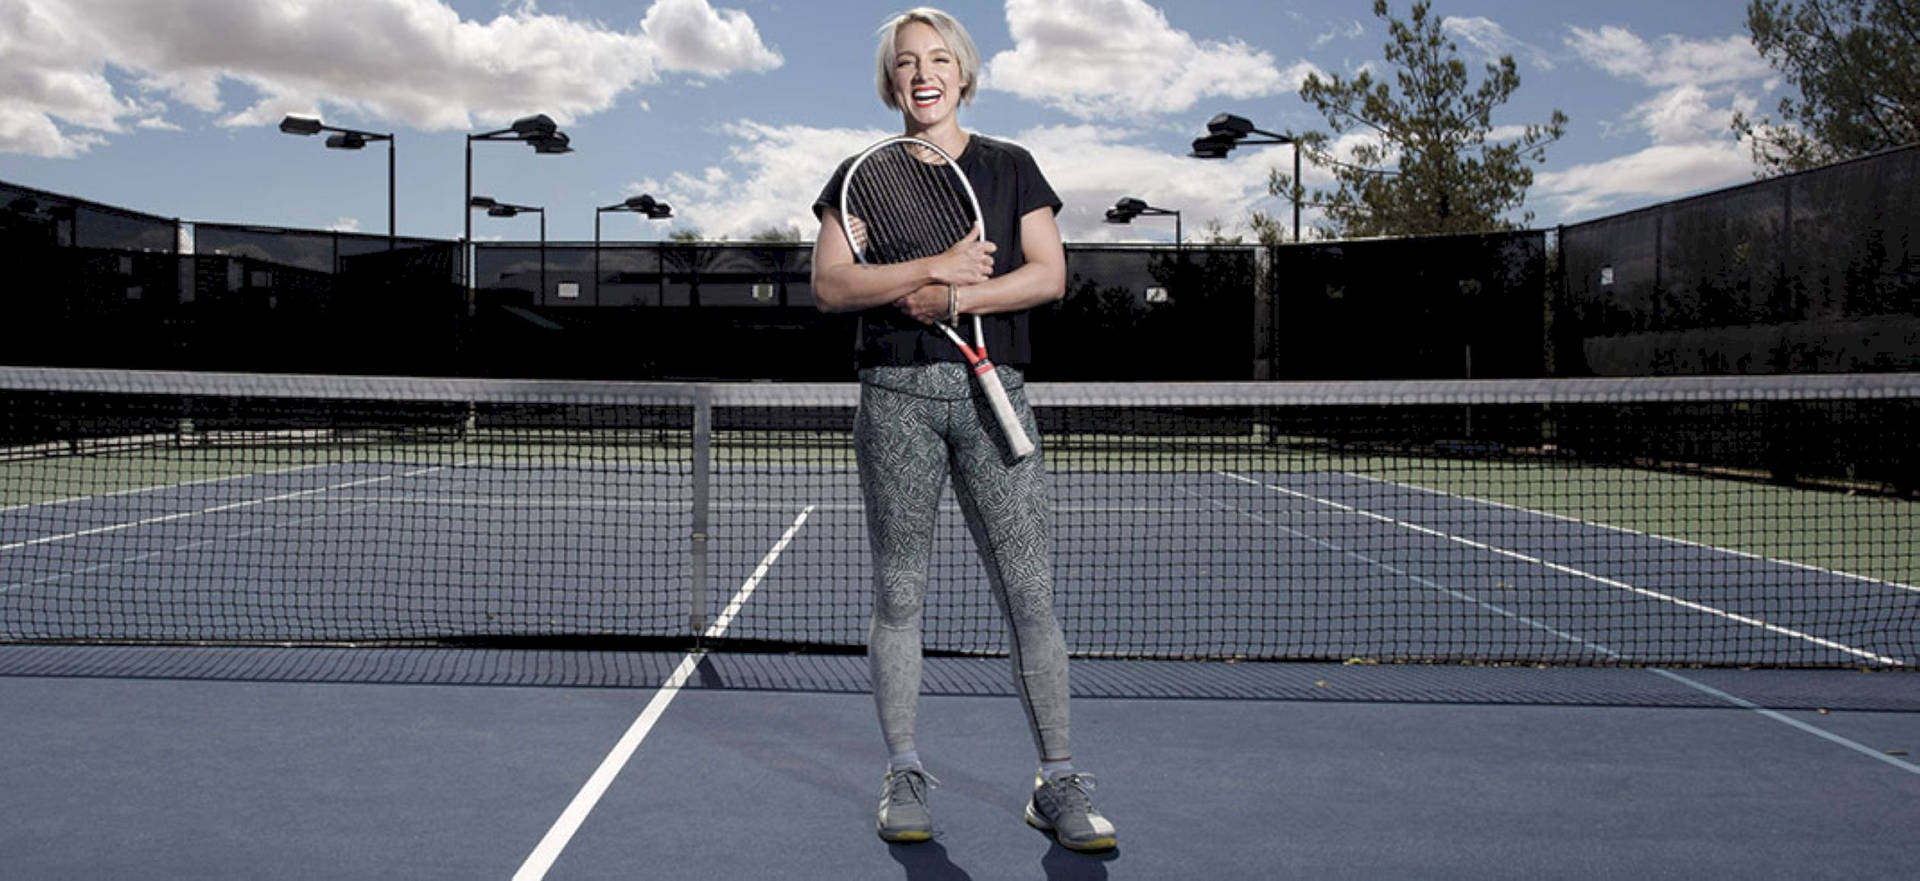 Bethanie Mattek-sands On Tennis Court Wallpaper